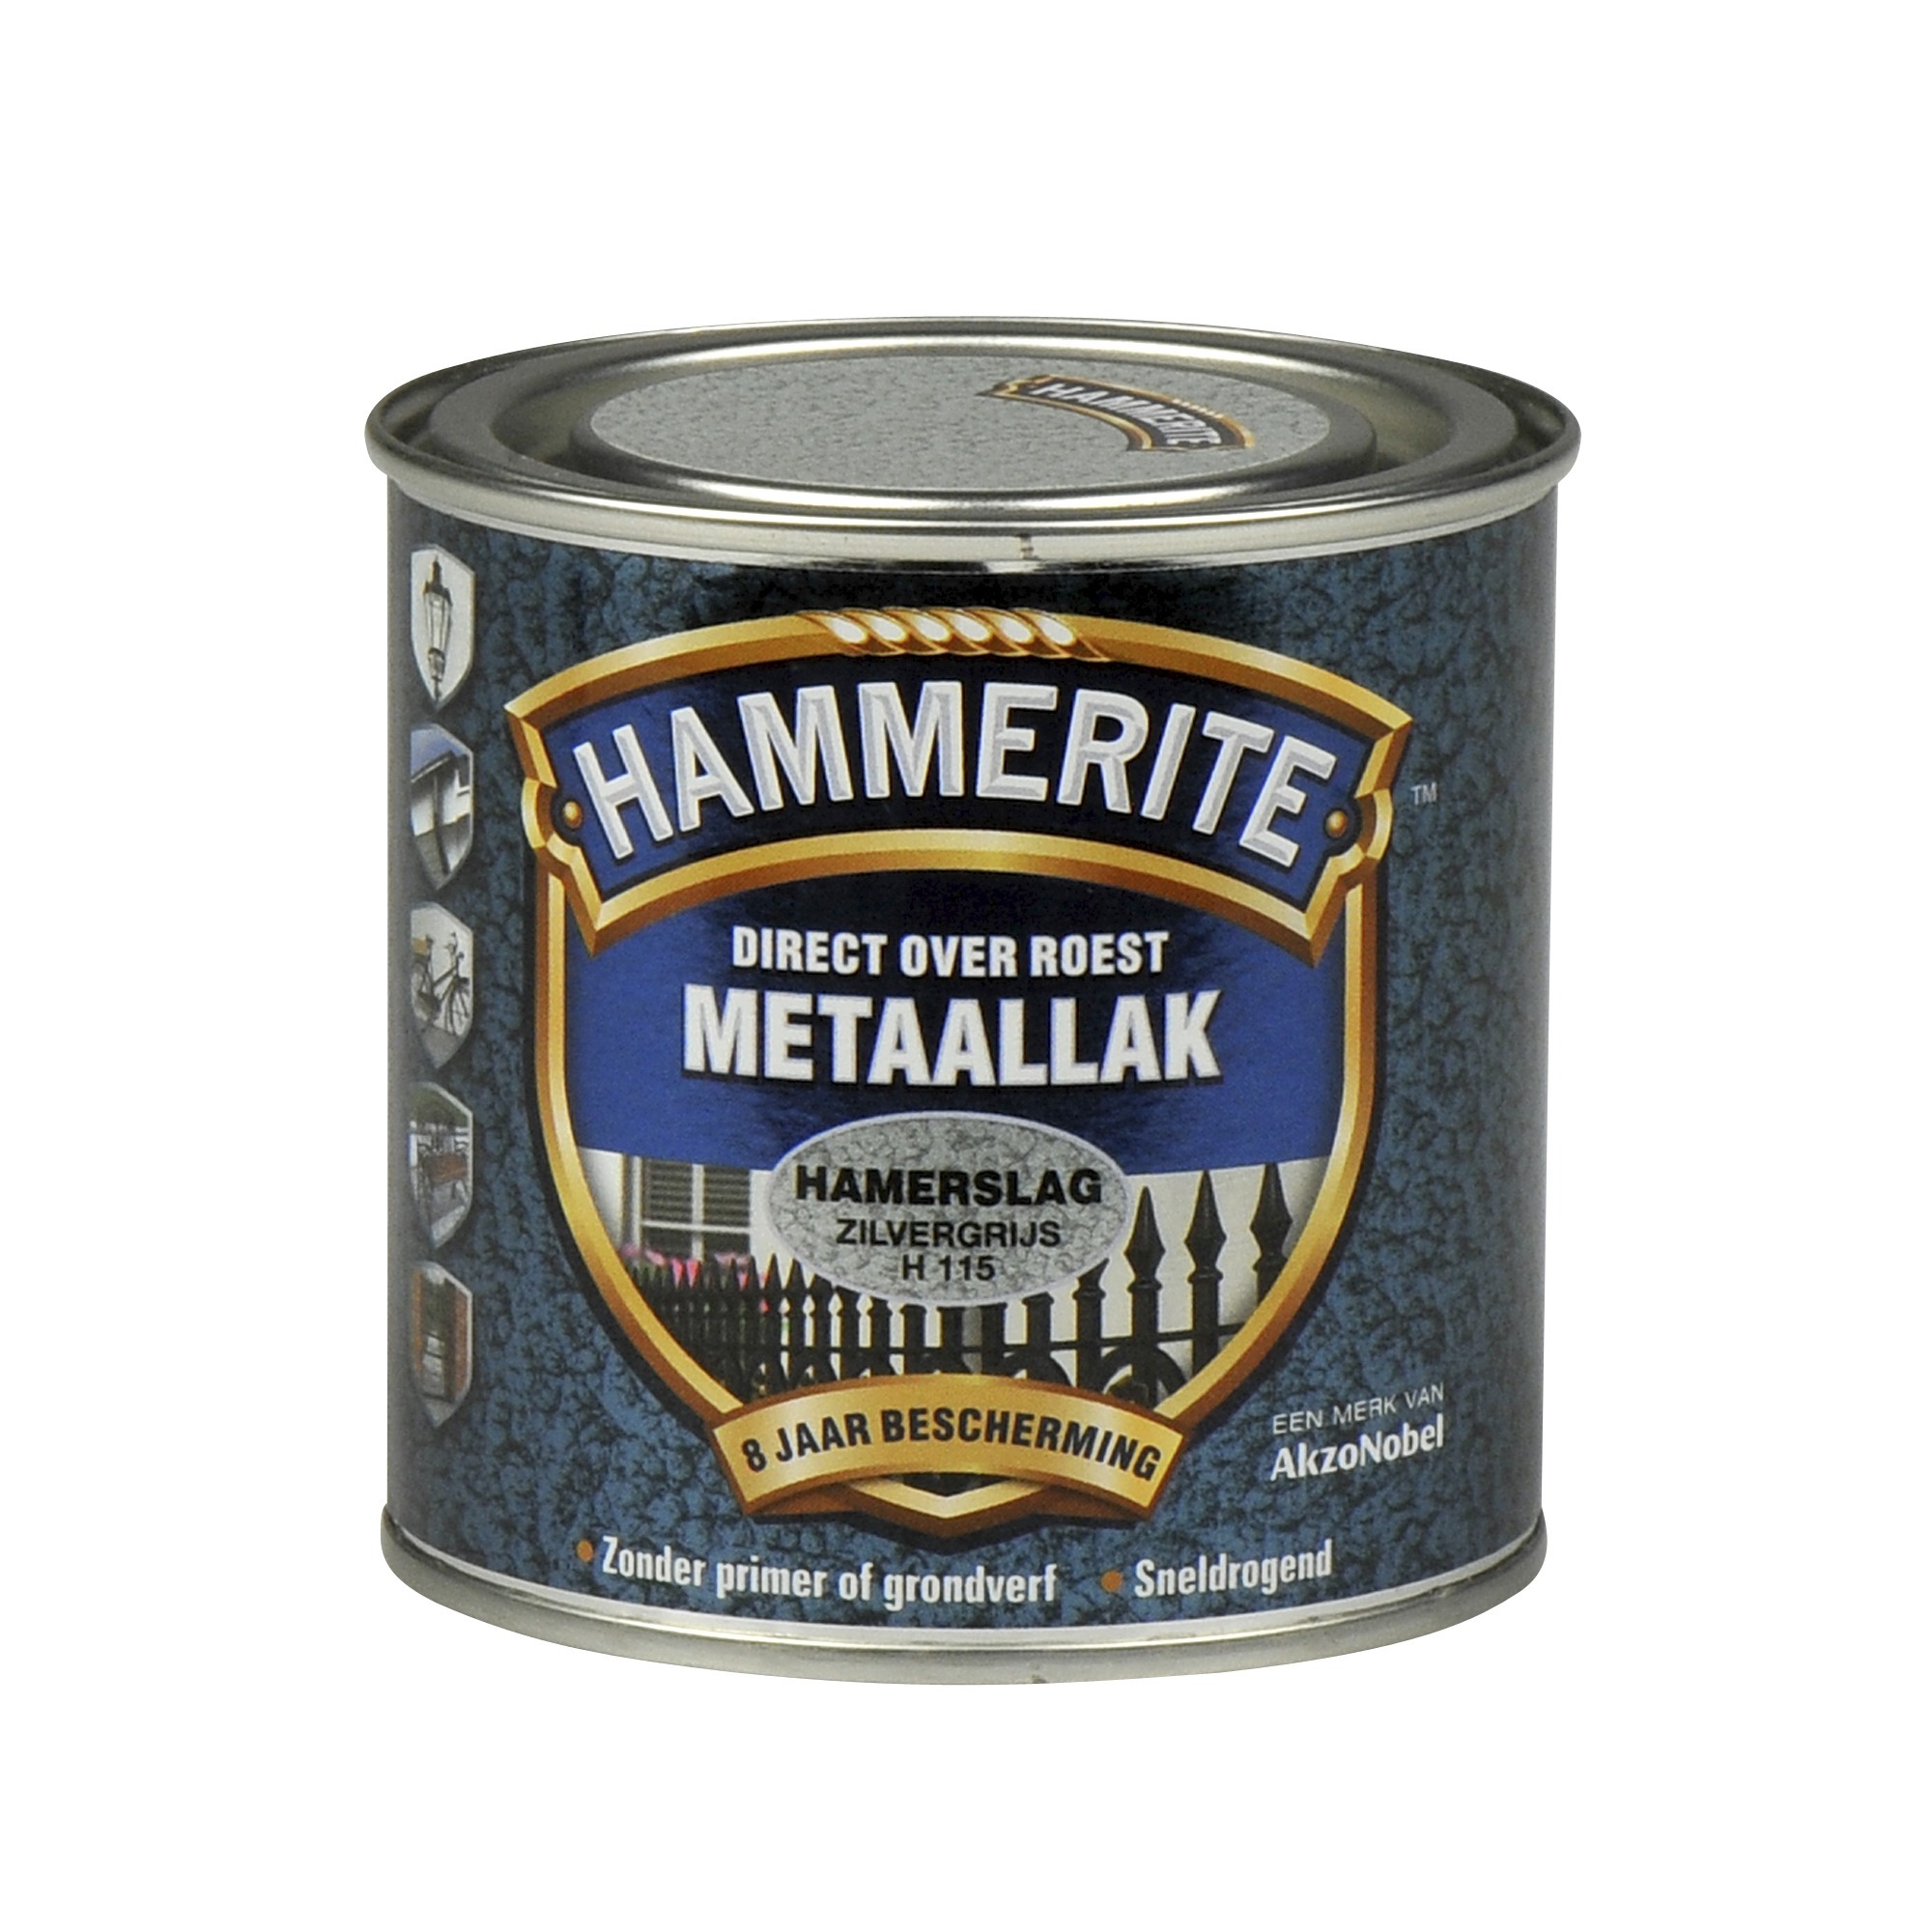 Hammerite direct over roest metaallak hamerslag zilvergrijs - 250 ml